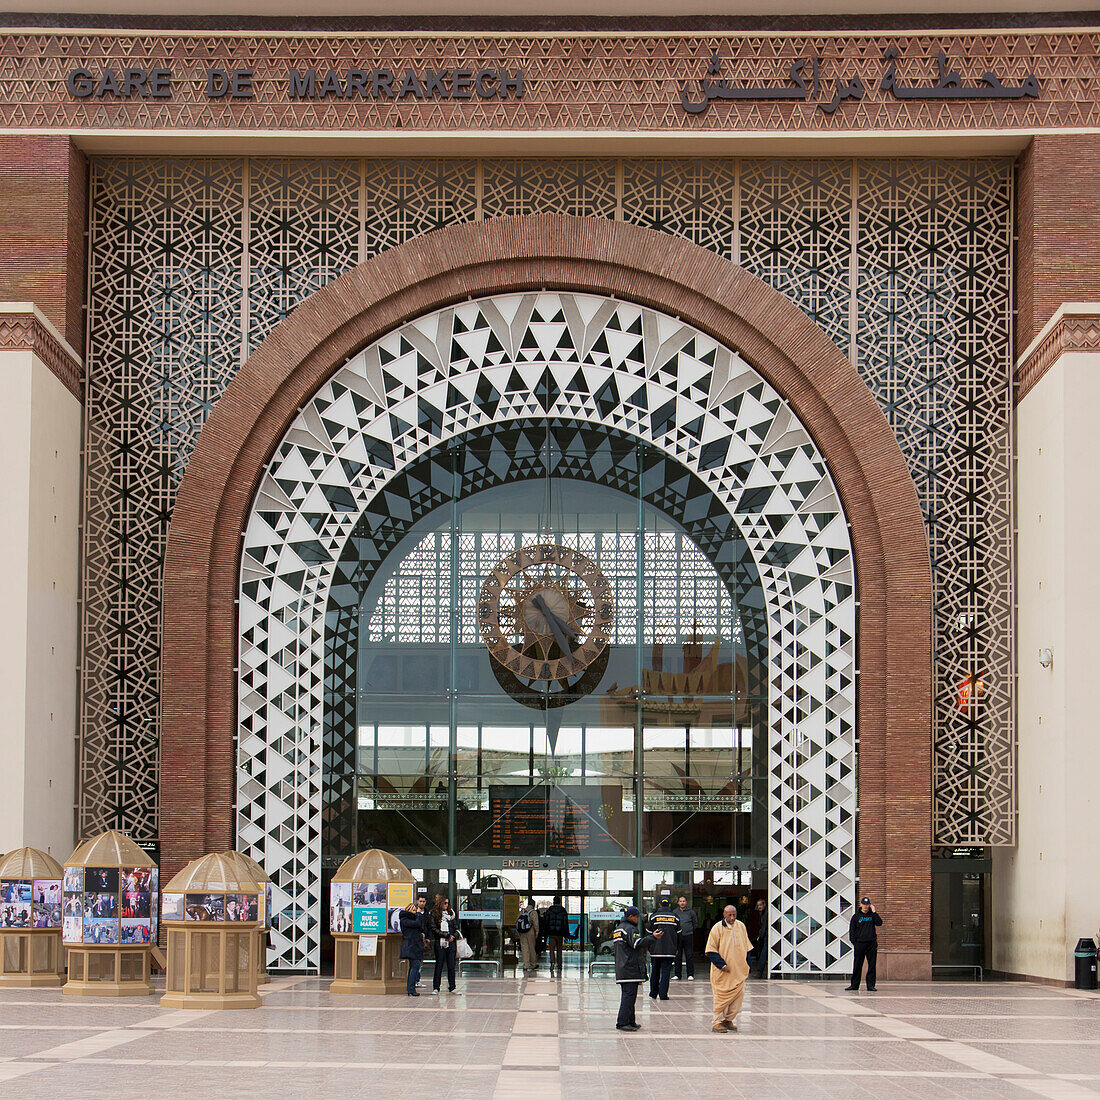 Bahnhof von Marrakesch; Marrakesch, Marrakesch-Tensift-El Haouz, Marokko